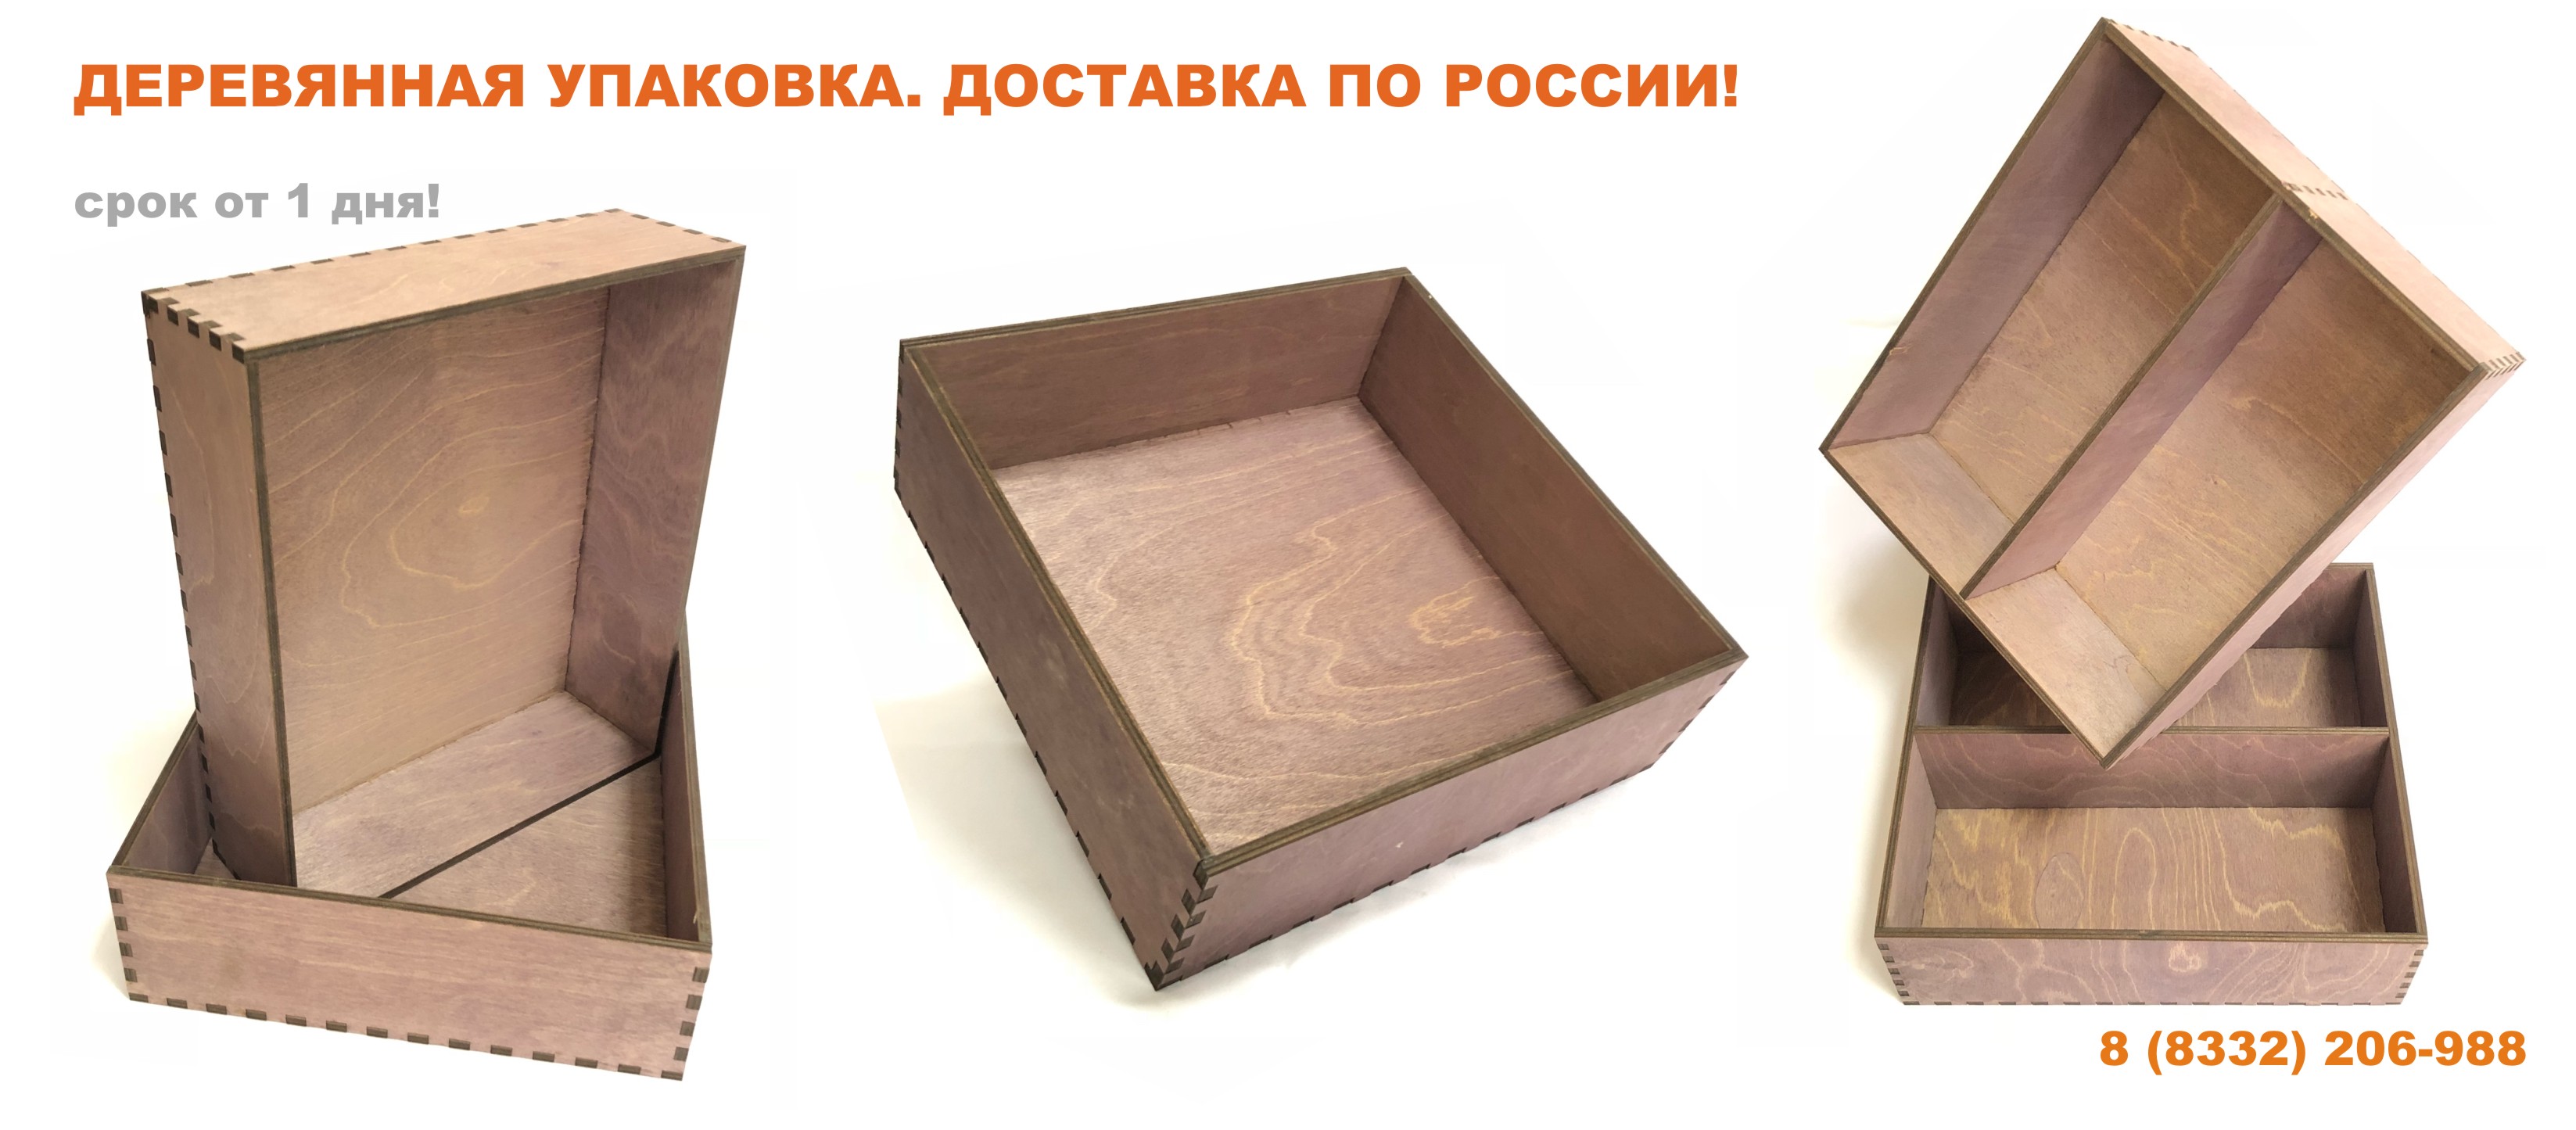 Деревянная упаковка.  Доставка по России